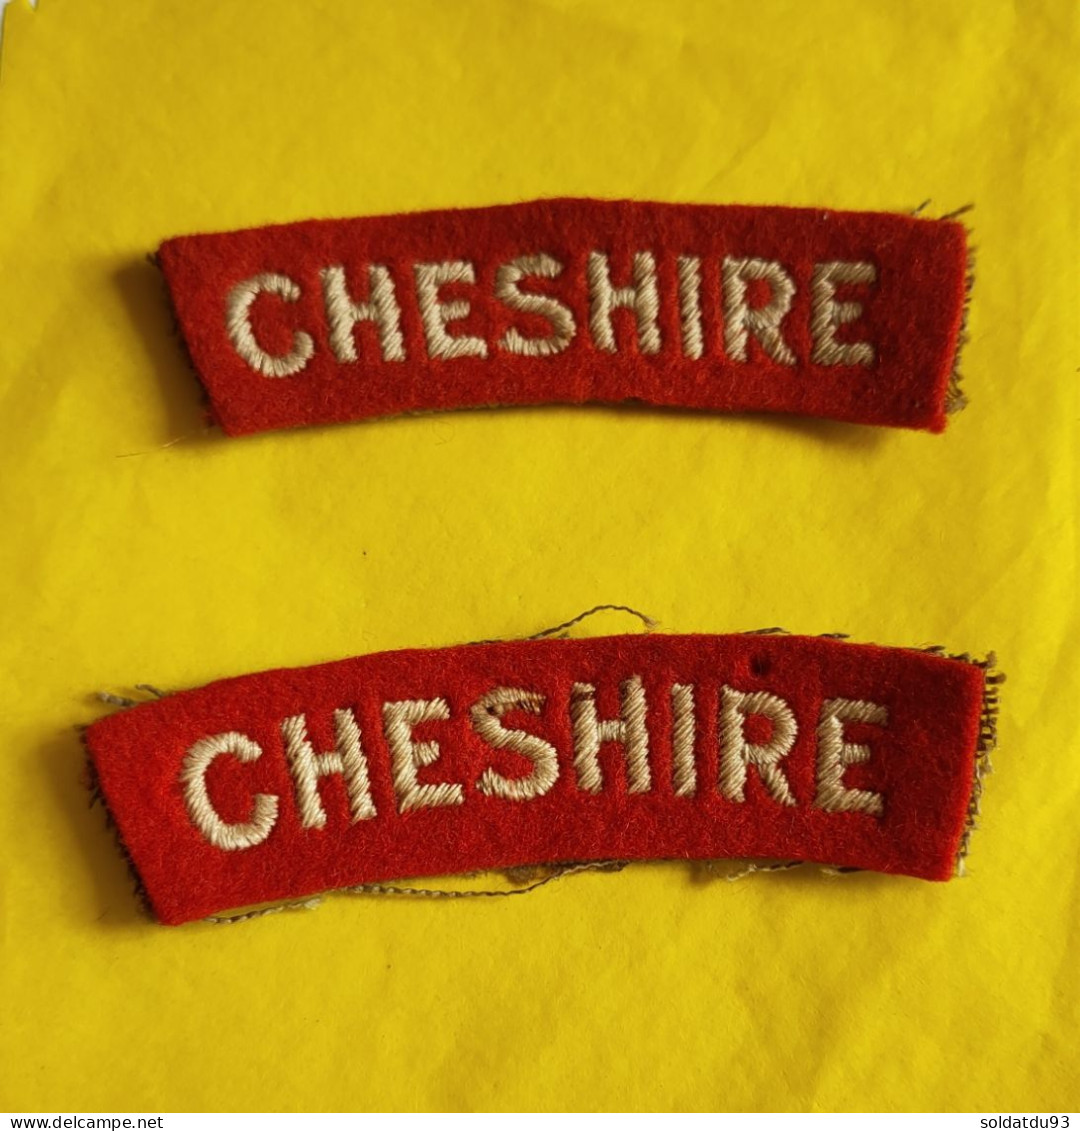 Titres D'épaule Cheshire (La Paire) - Patches